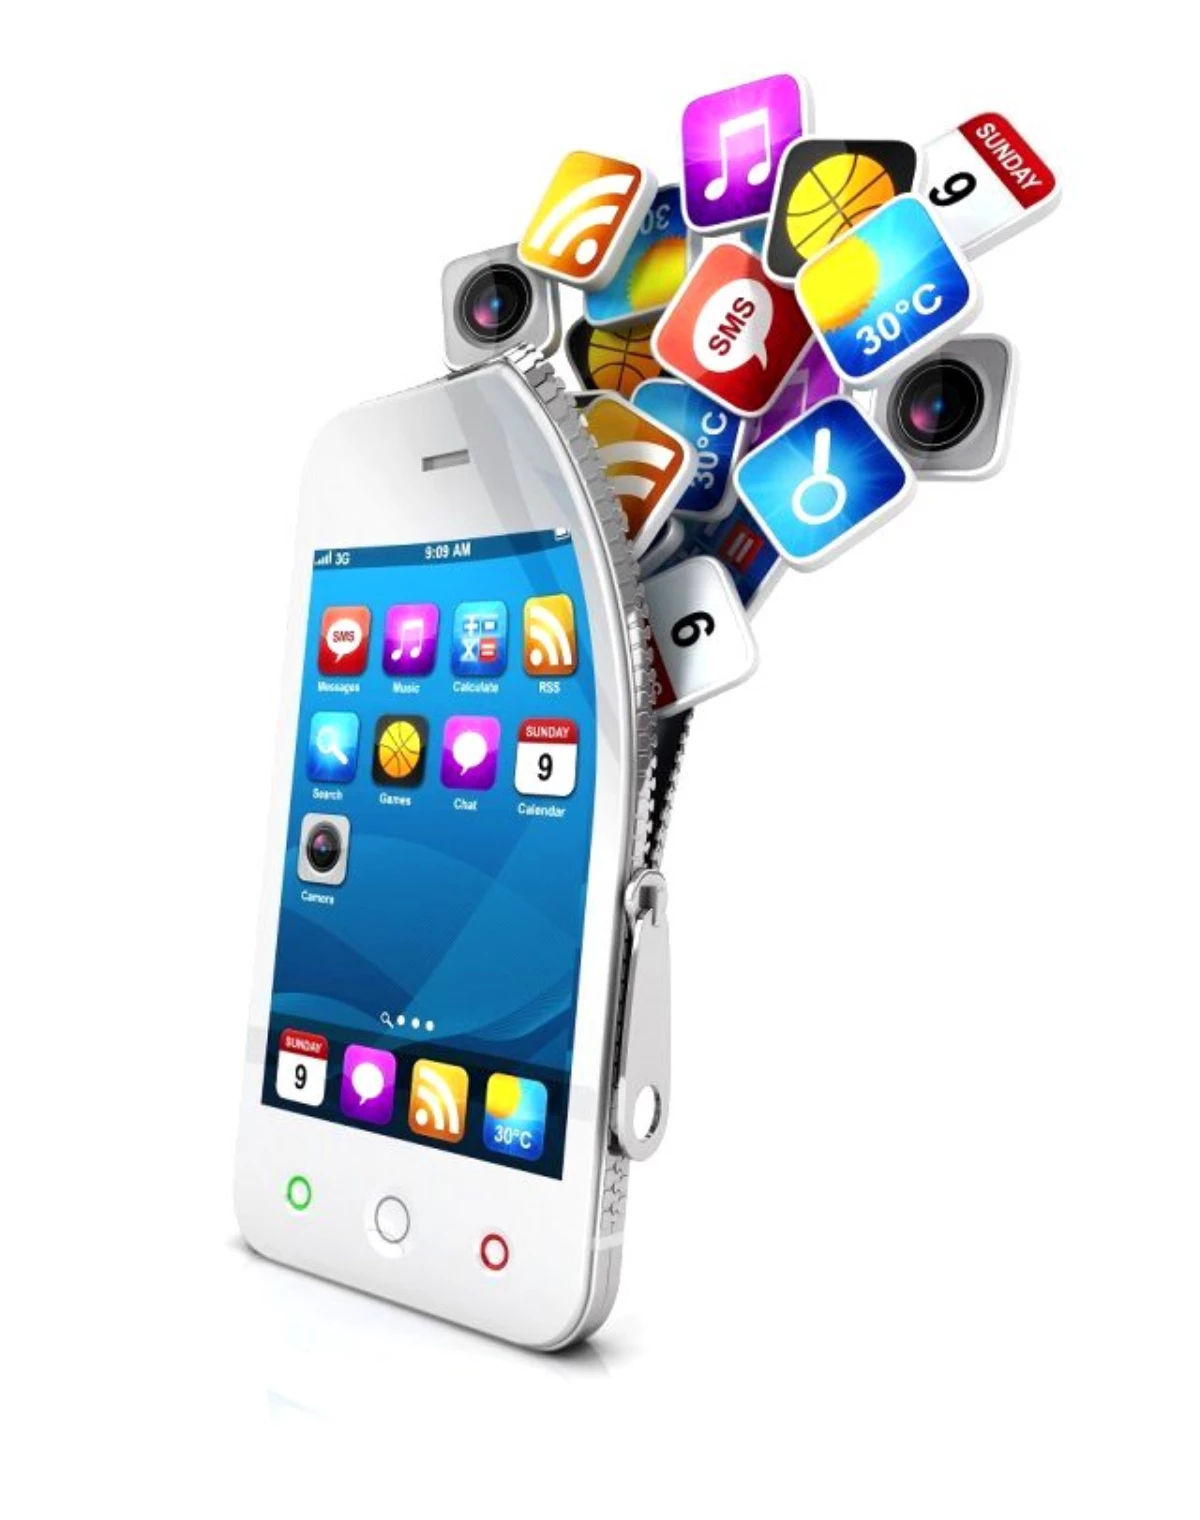 indir.com Mobil Uygulama Yarışması 2015 Başlıyor!